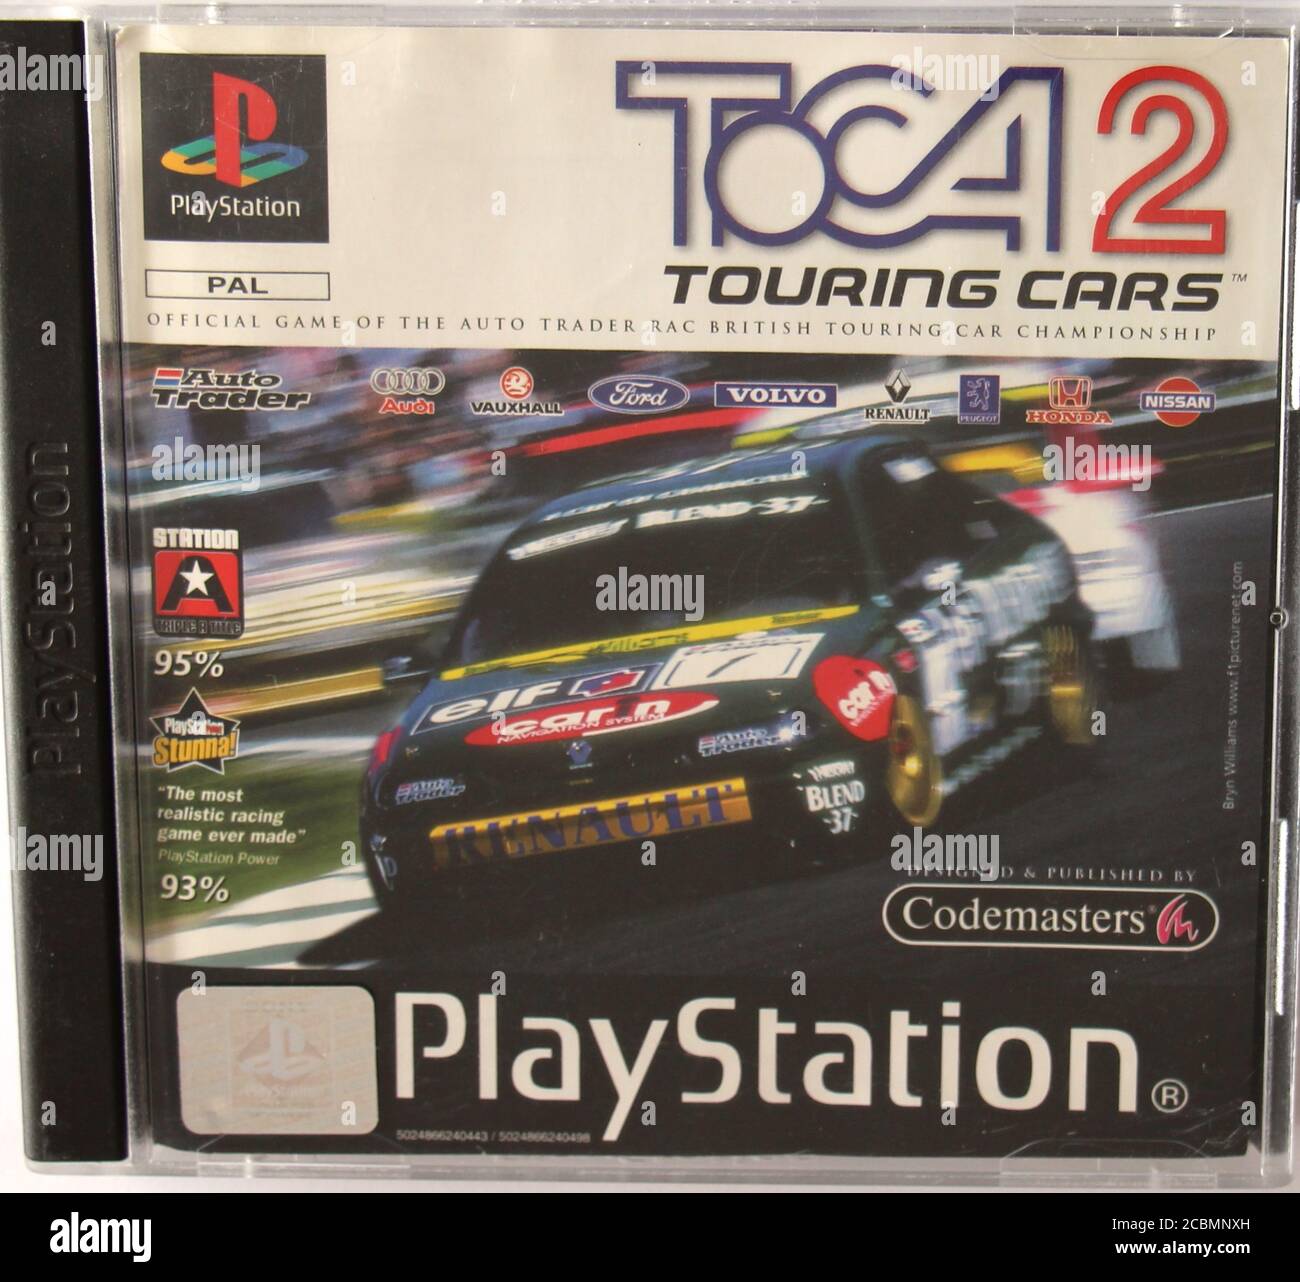 Foto de una caja original de CD de PlayStation 1 y portada para el juego DE carreras de autos TOCA 2 Foto de stock